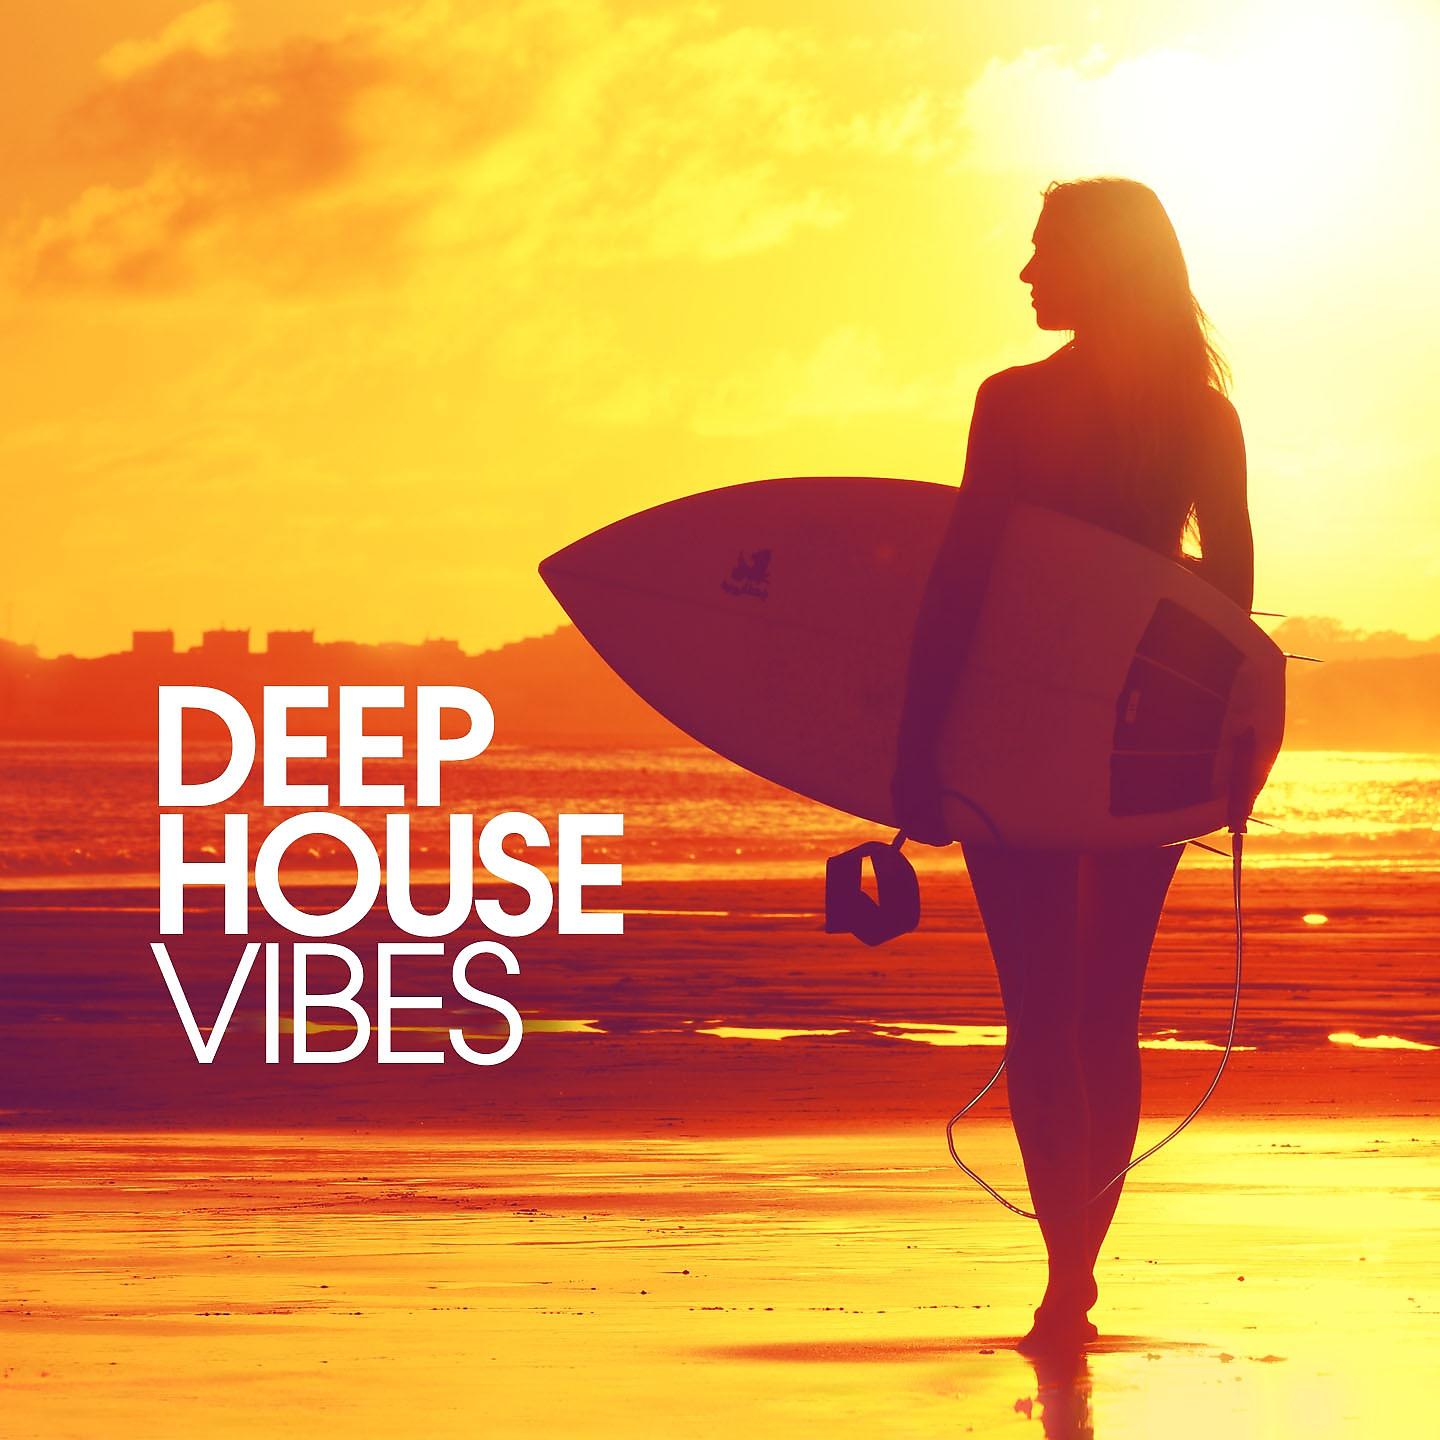 Joey richmond. Дип Хаус. Deep House обложка альбома. Vibe House Deep. Обложка для дип хауса.